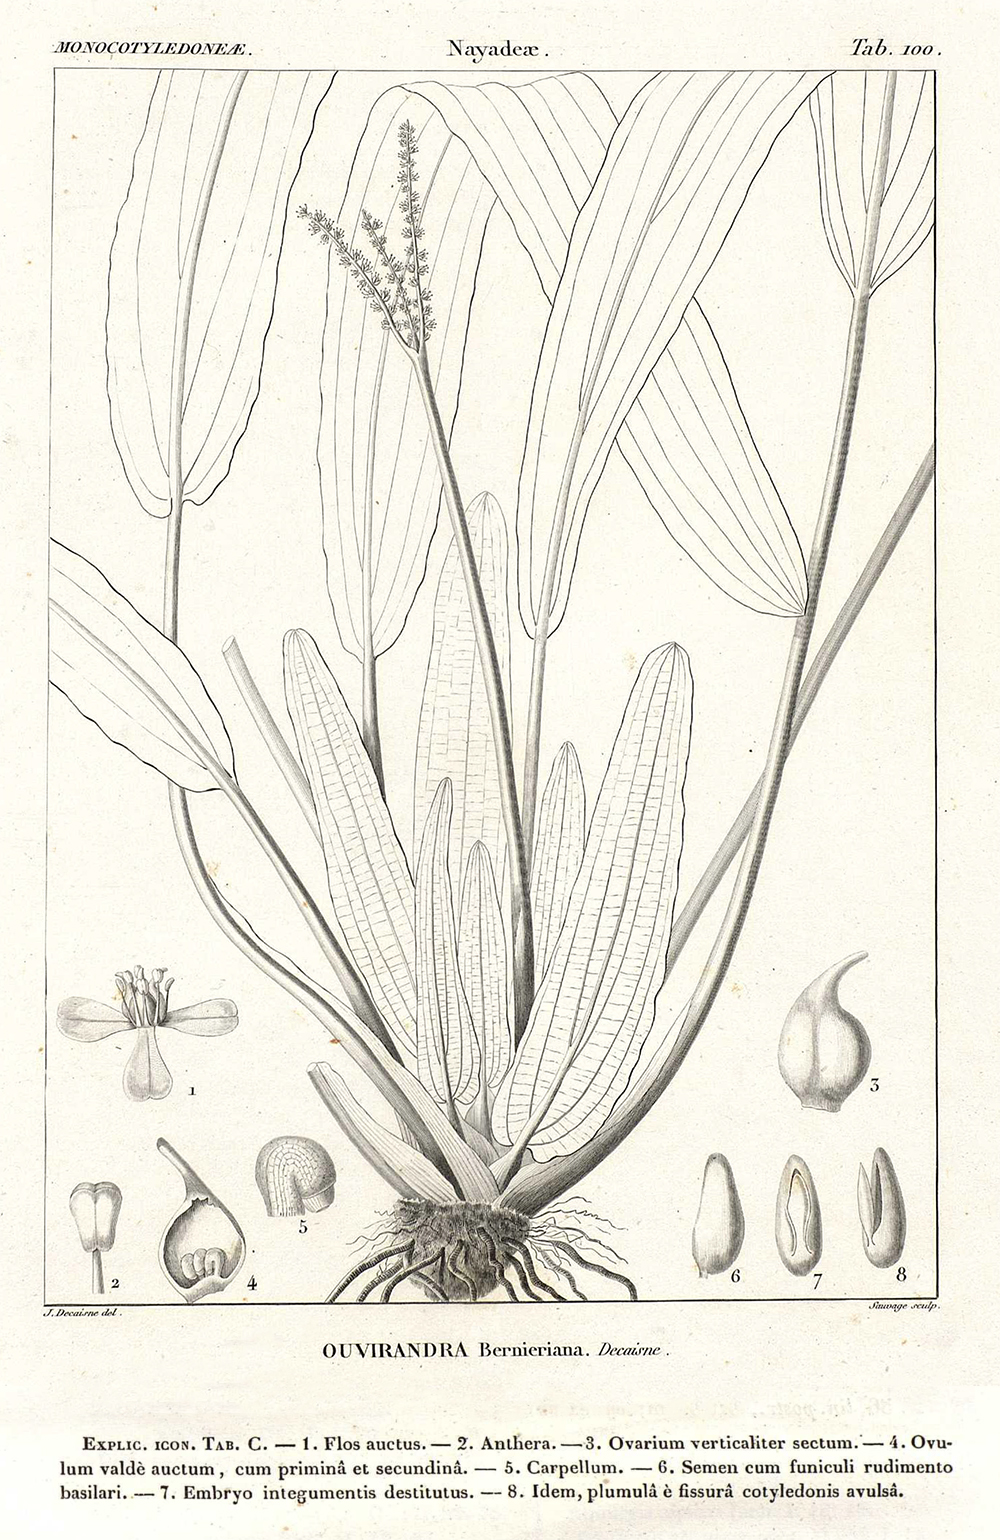 Bild aus der Erstbeschreibung von Ouvirandra bernierniana